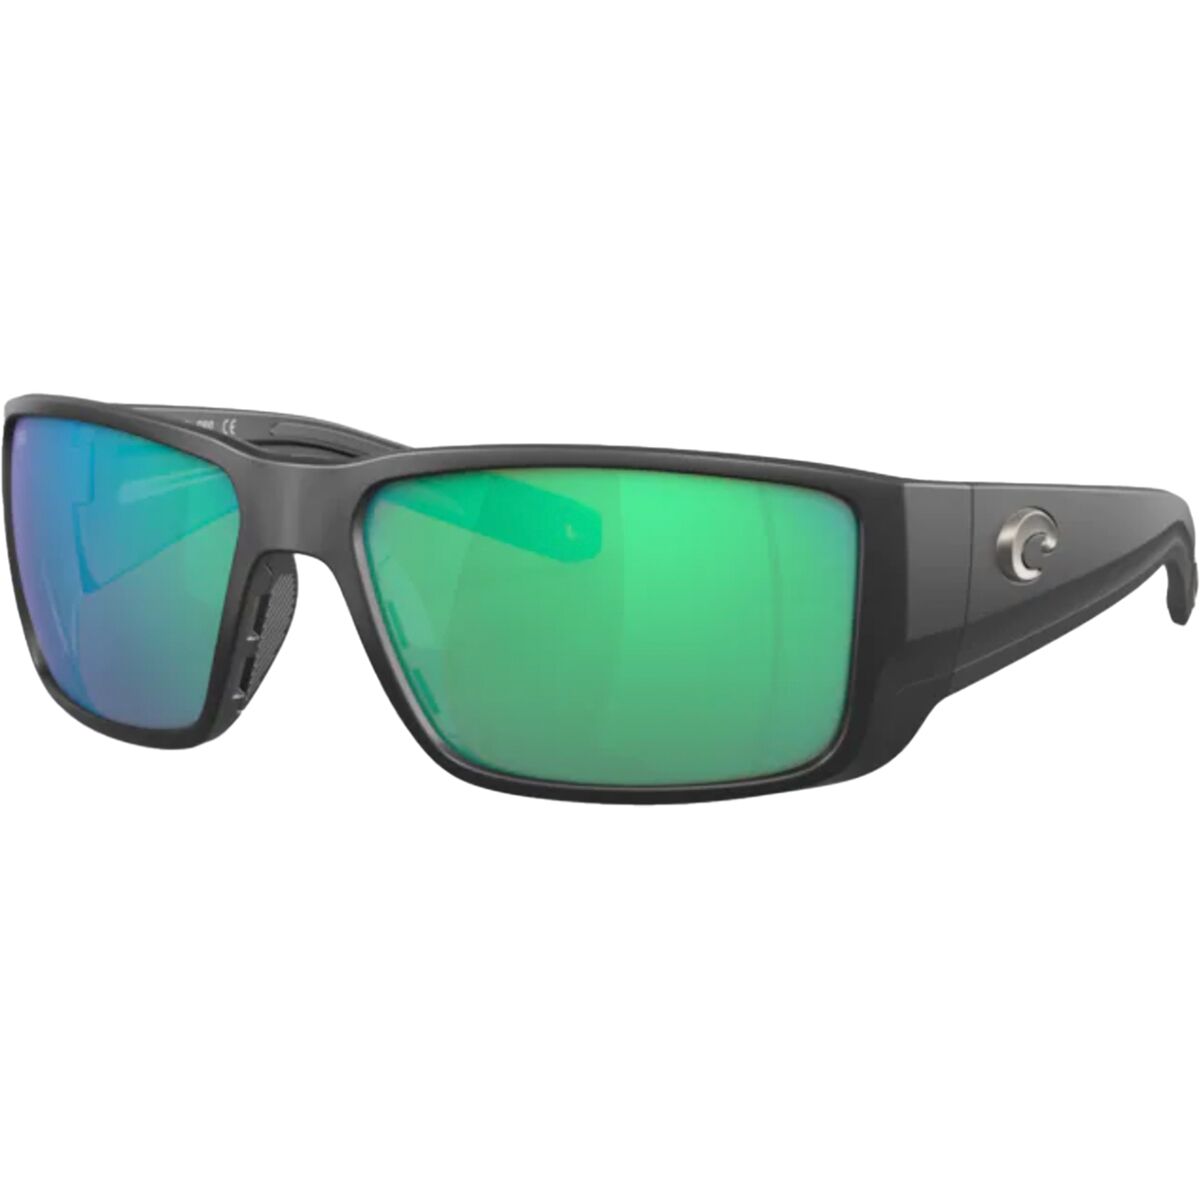 Pre-owned Costa Del Mar Costa Blackfin Pro 580g Polarized Sunglasses In Matte Black/580g Glass/copper